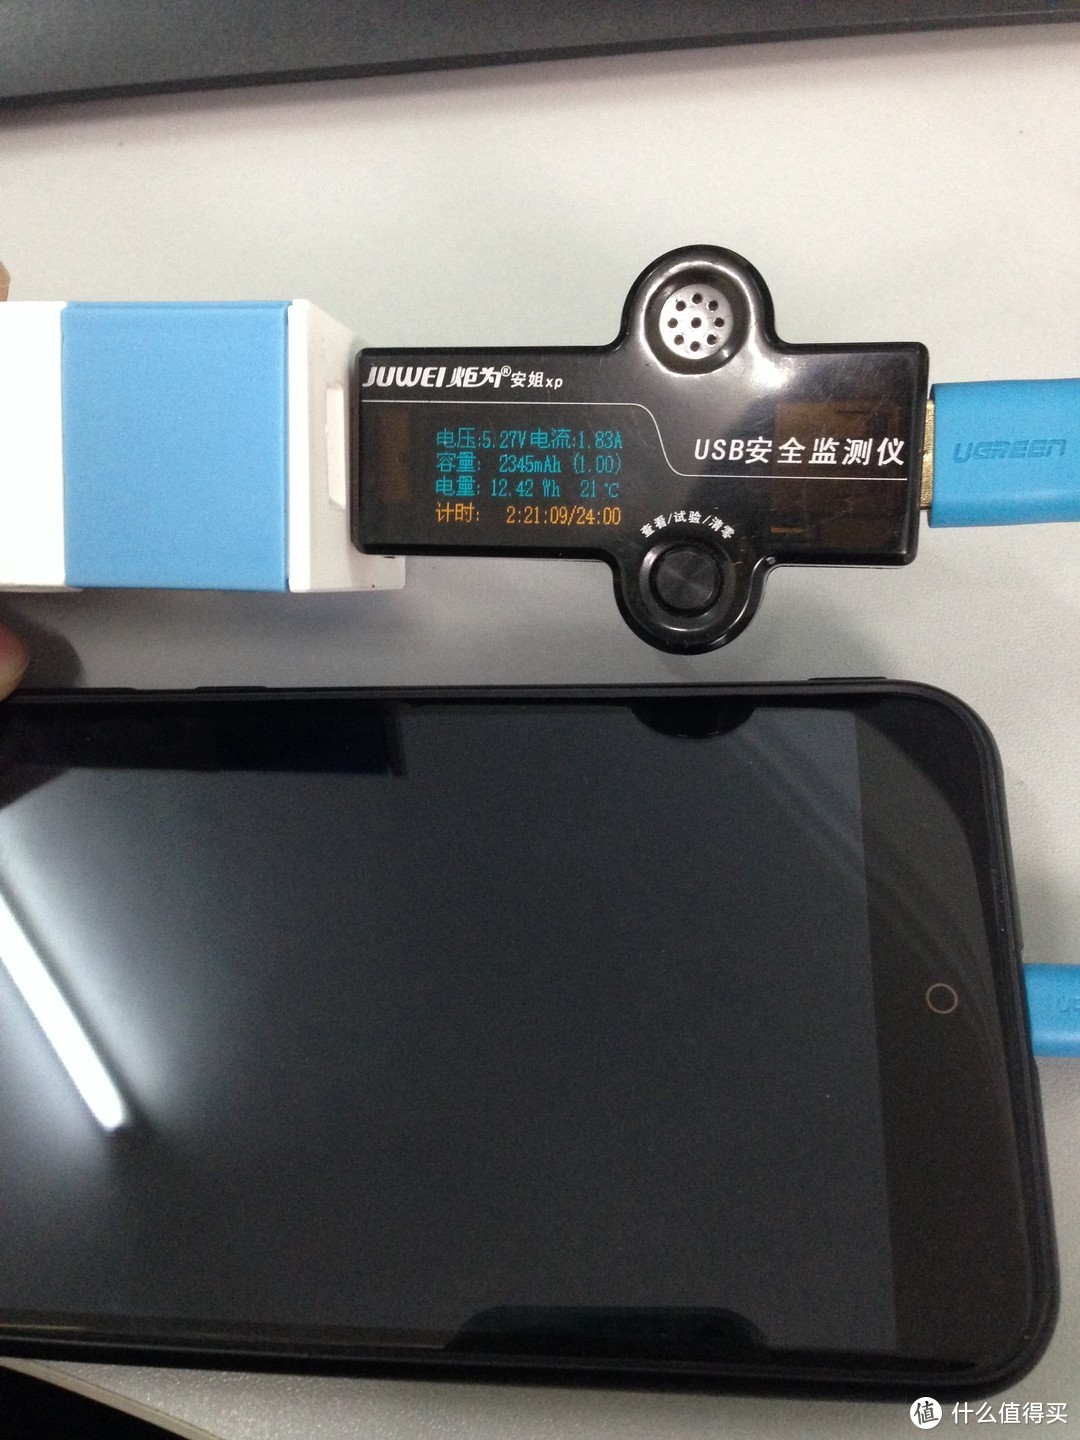 惠爱家 SW-050240 智能USB插座 开箱及与MI 小米 插排简单对比